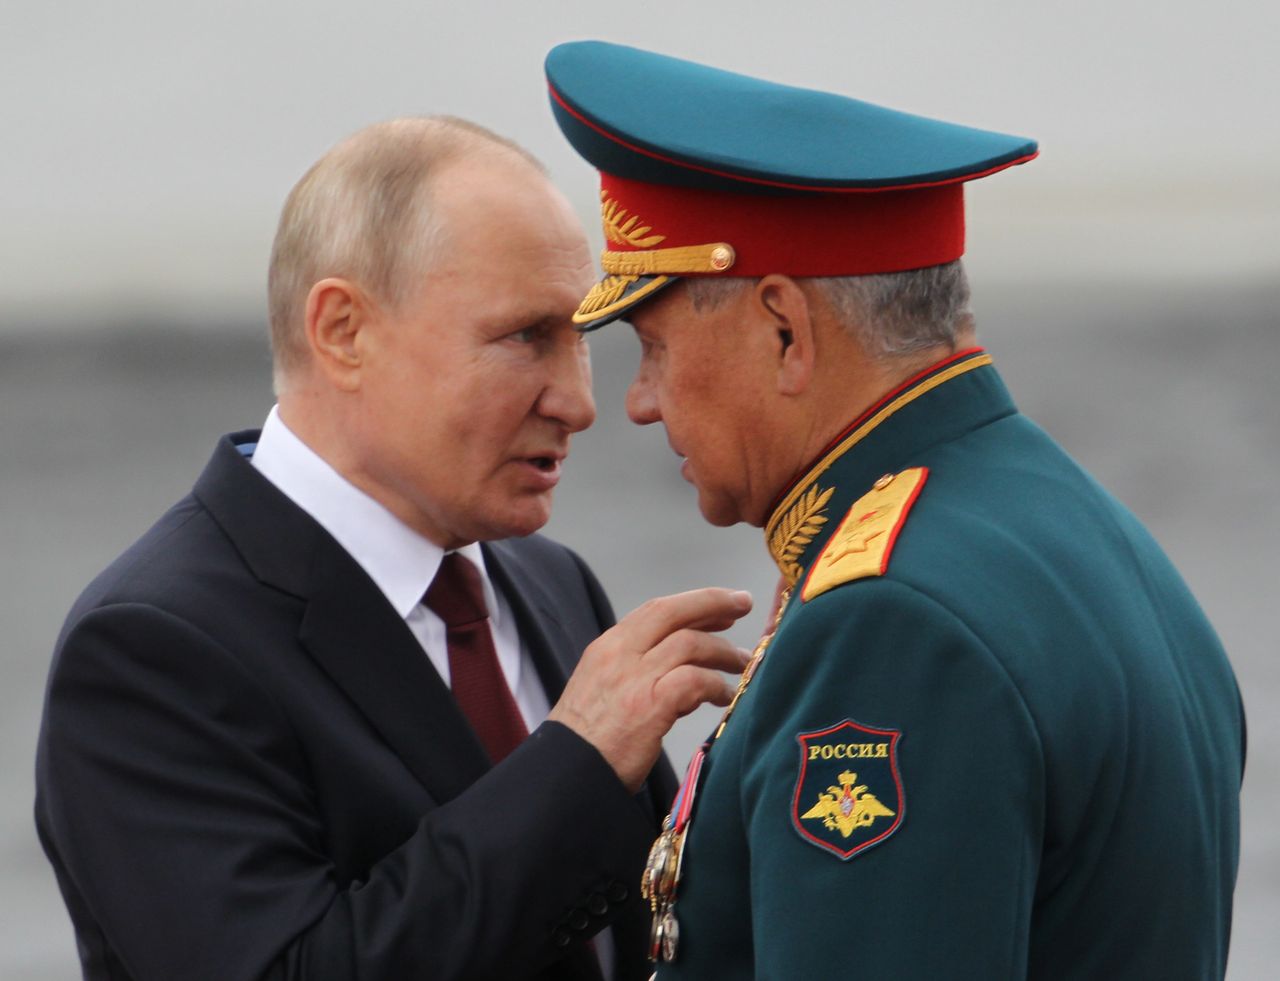 "Rosja potrzebuje blitzkriegu". Ekspert o ewentualnej wojnie z Ukrainą